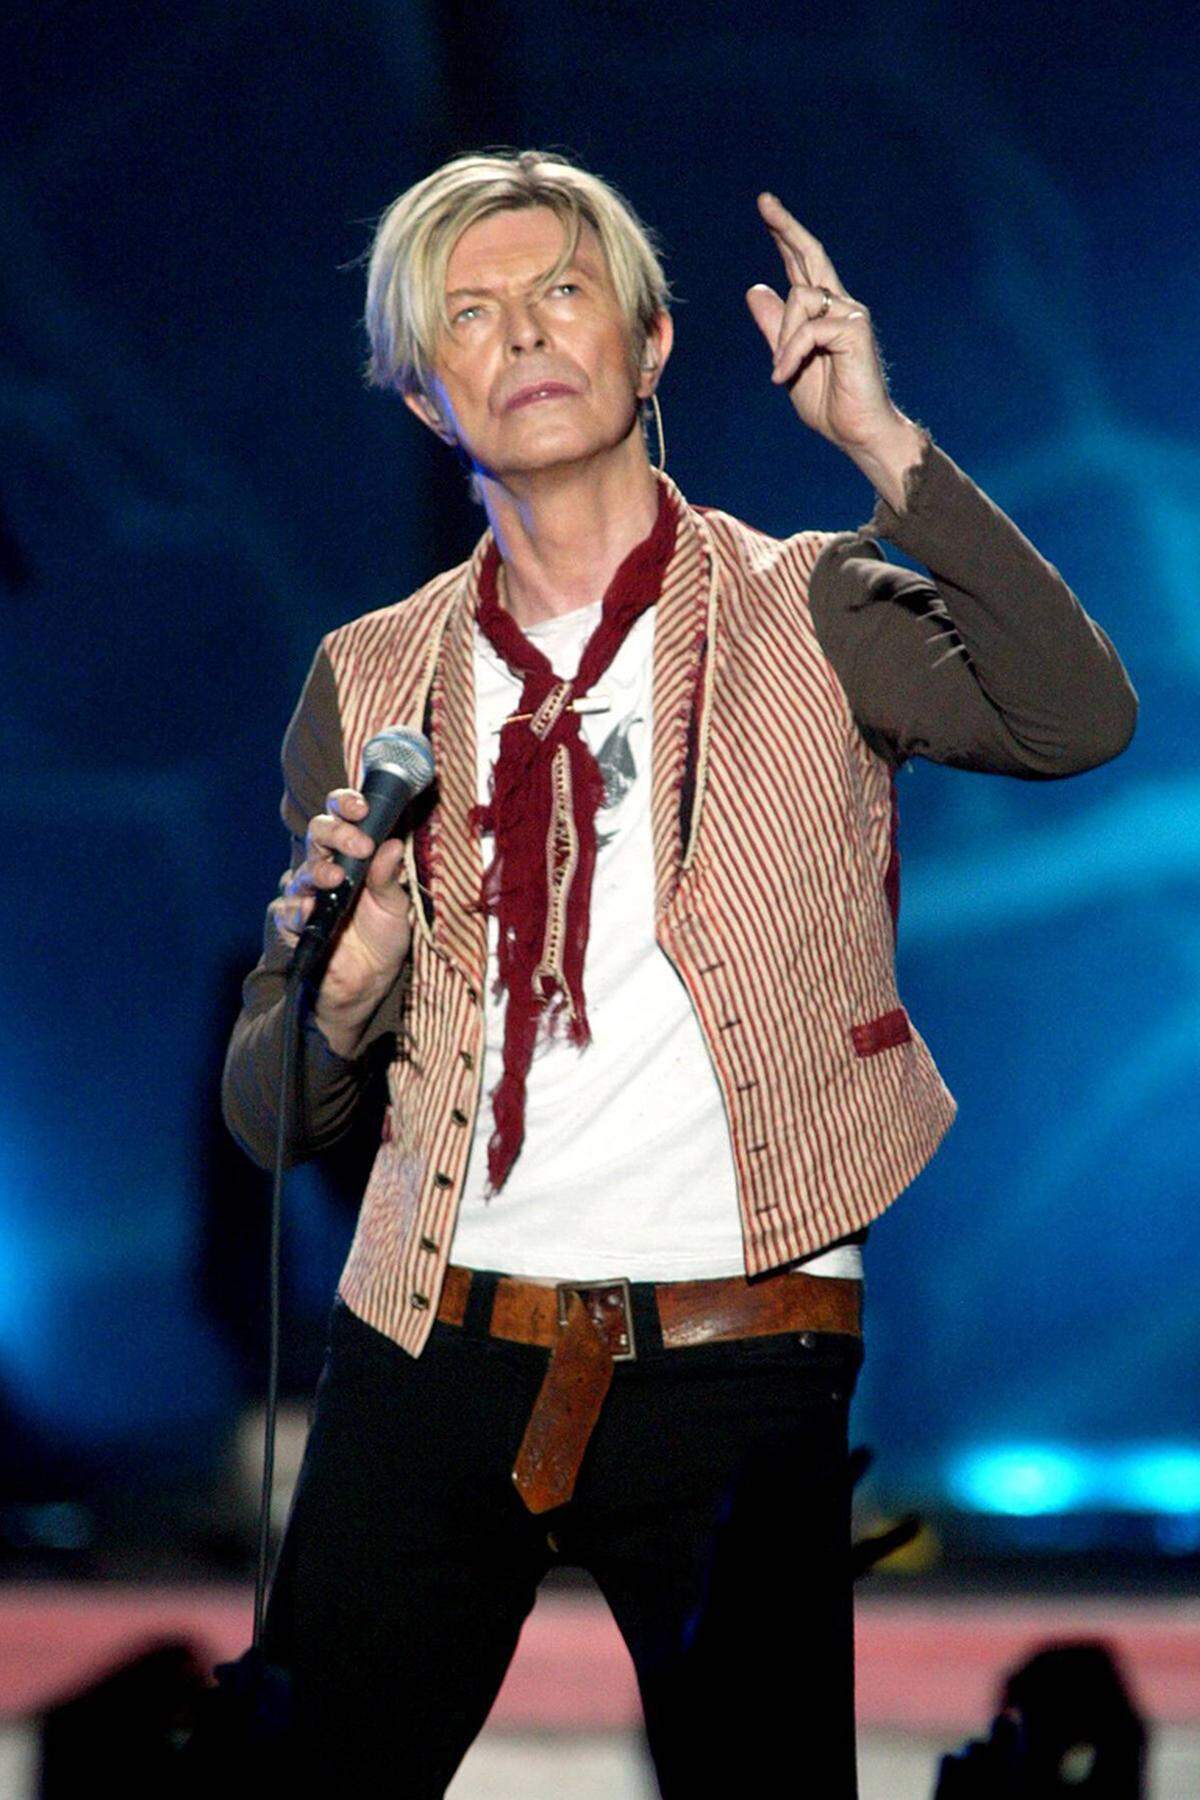 Danach verzettelte sich Bowie in stetig wechselnden Pop-Genres, ehe ein Herzinfarkt beim Konzert im deutschen Scheessel 2003 ihn auch gesundheitlich aus der Bahn warf.